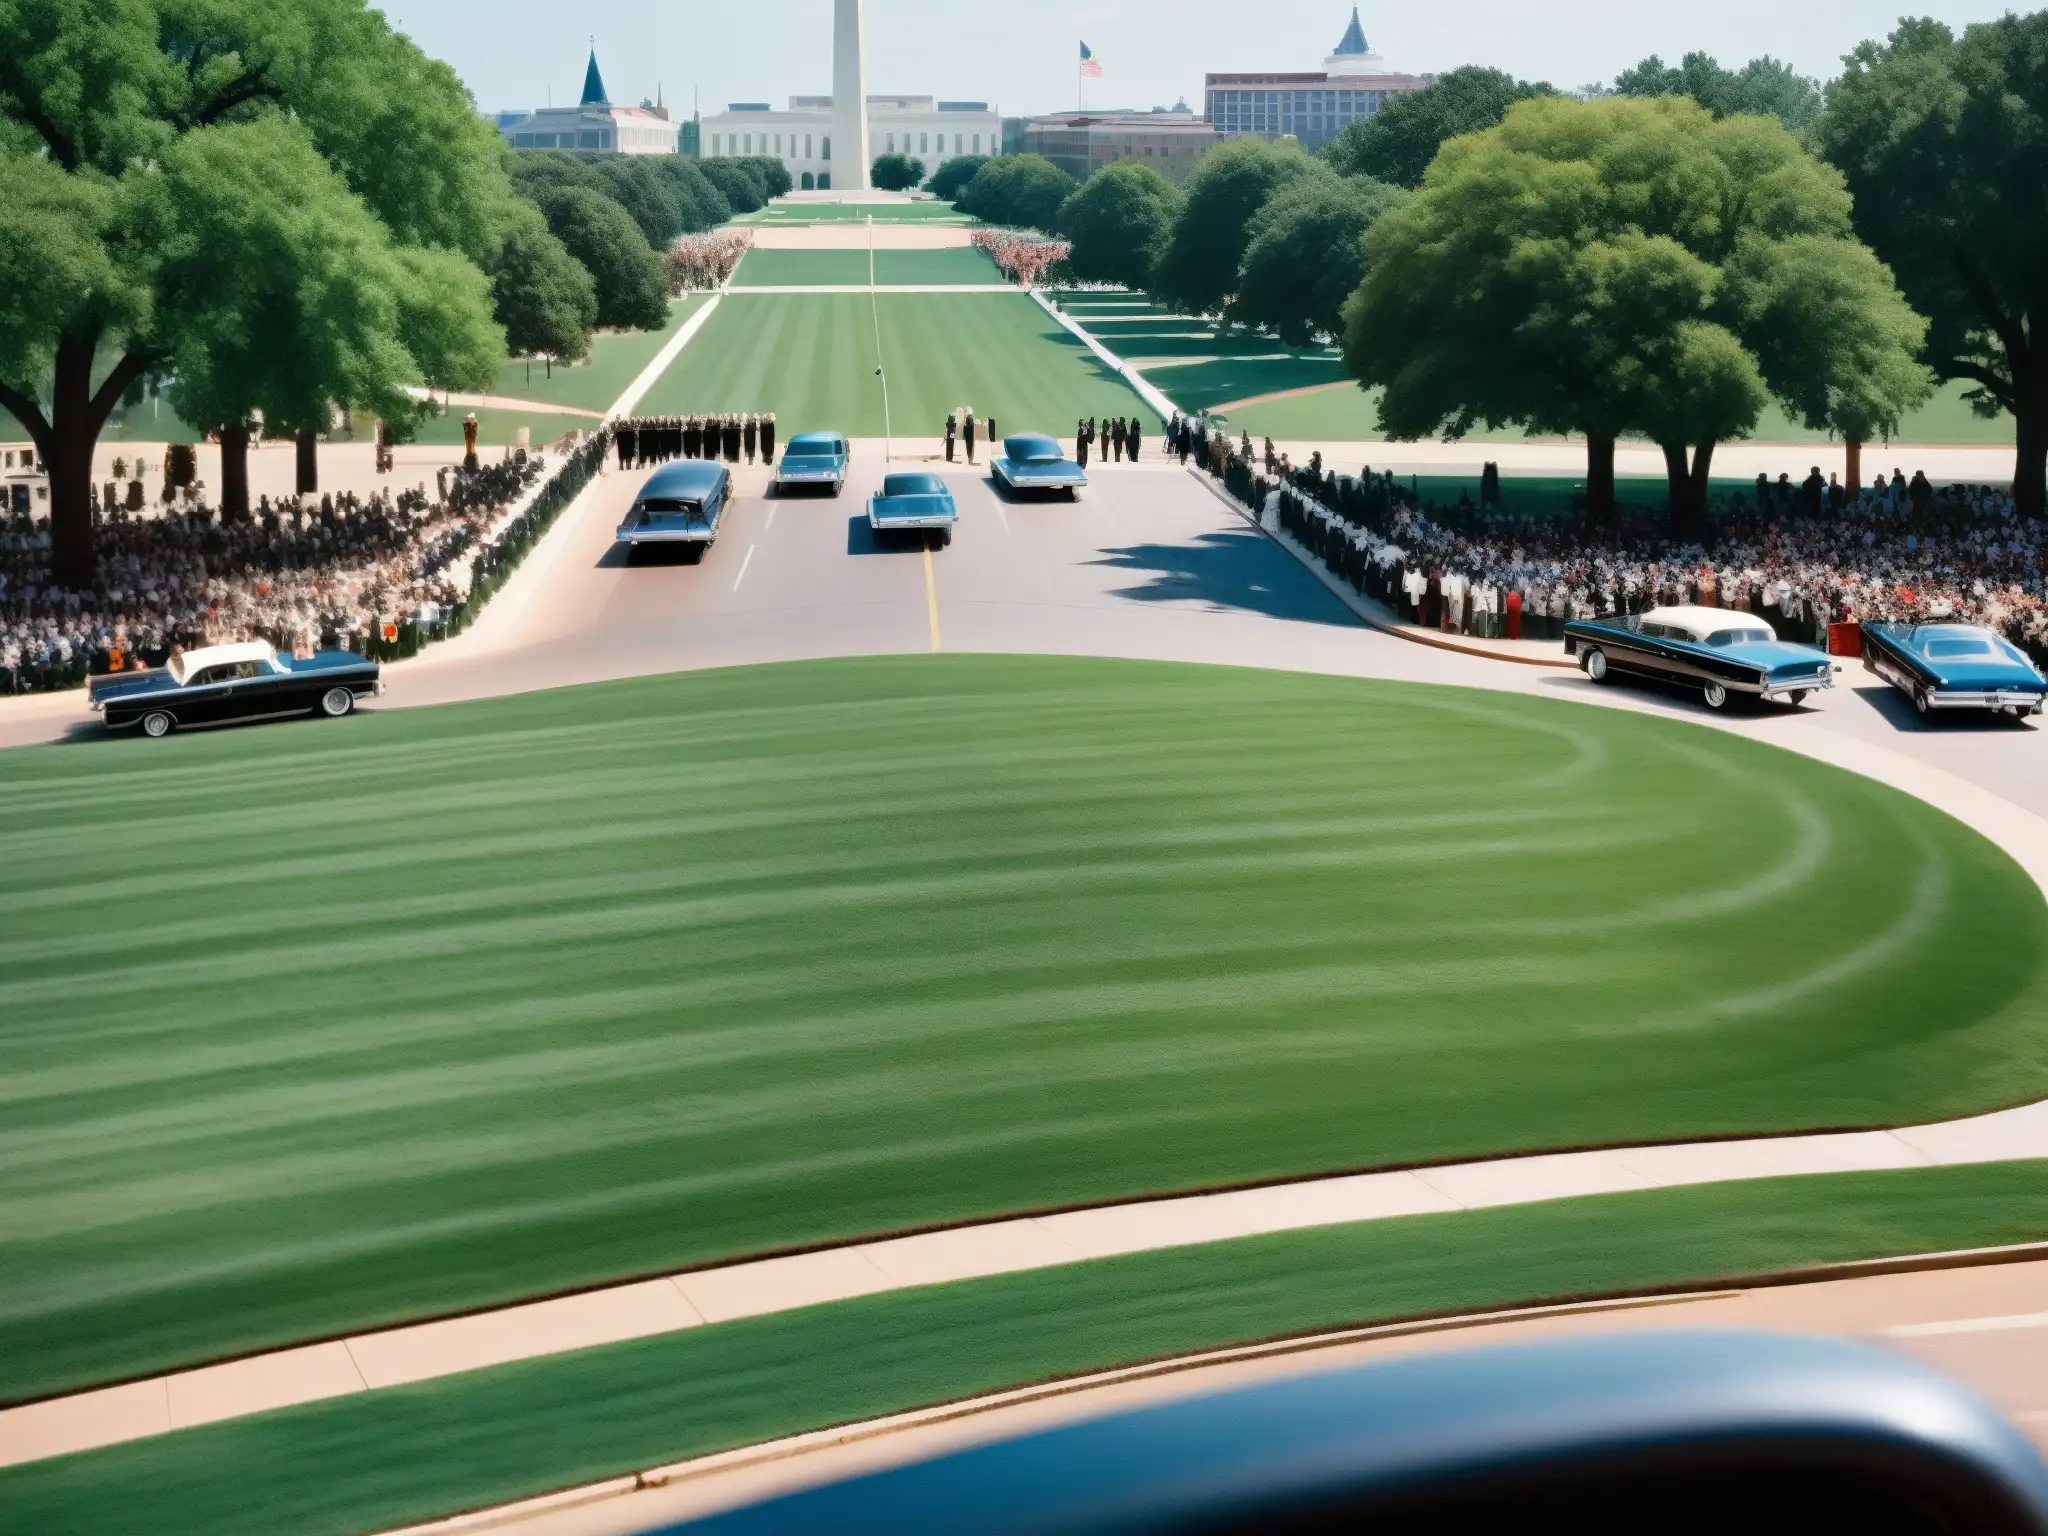 Imagen impactante del lugar del asesinato de JFK en Dallas, con multitud y motorcade, evocando intriga y misterio